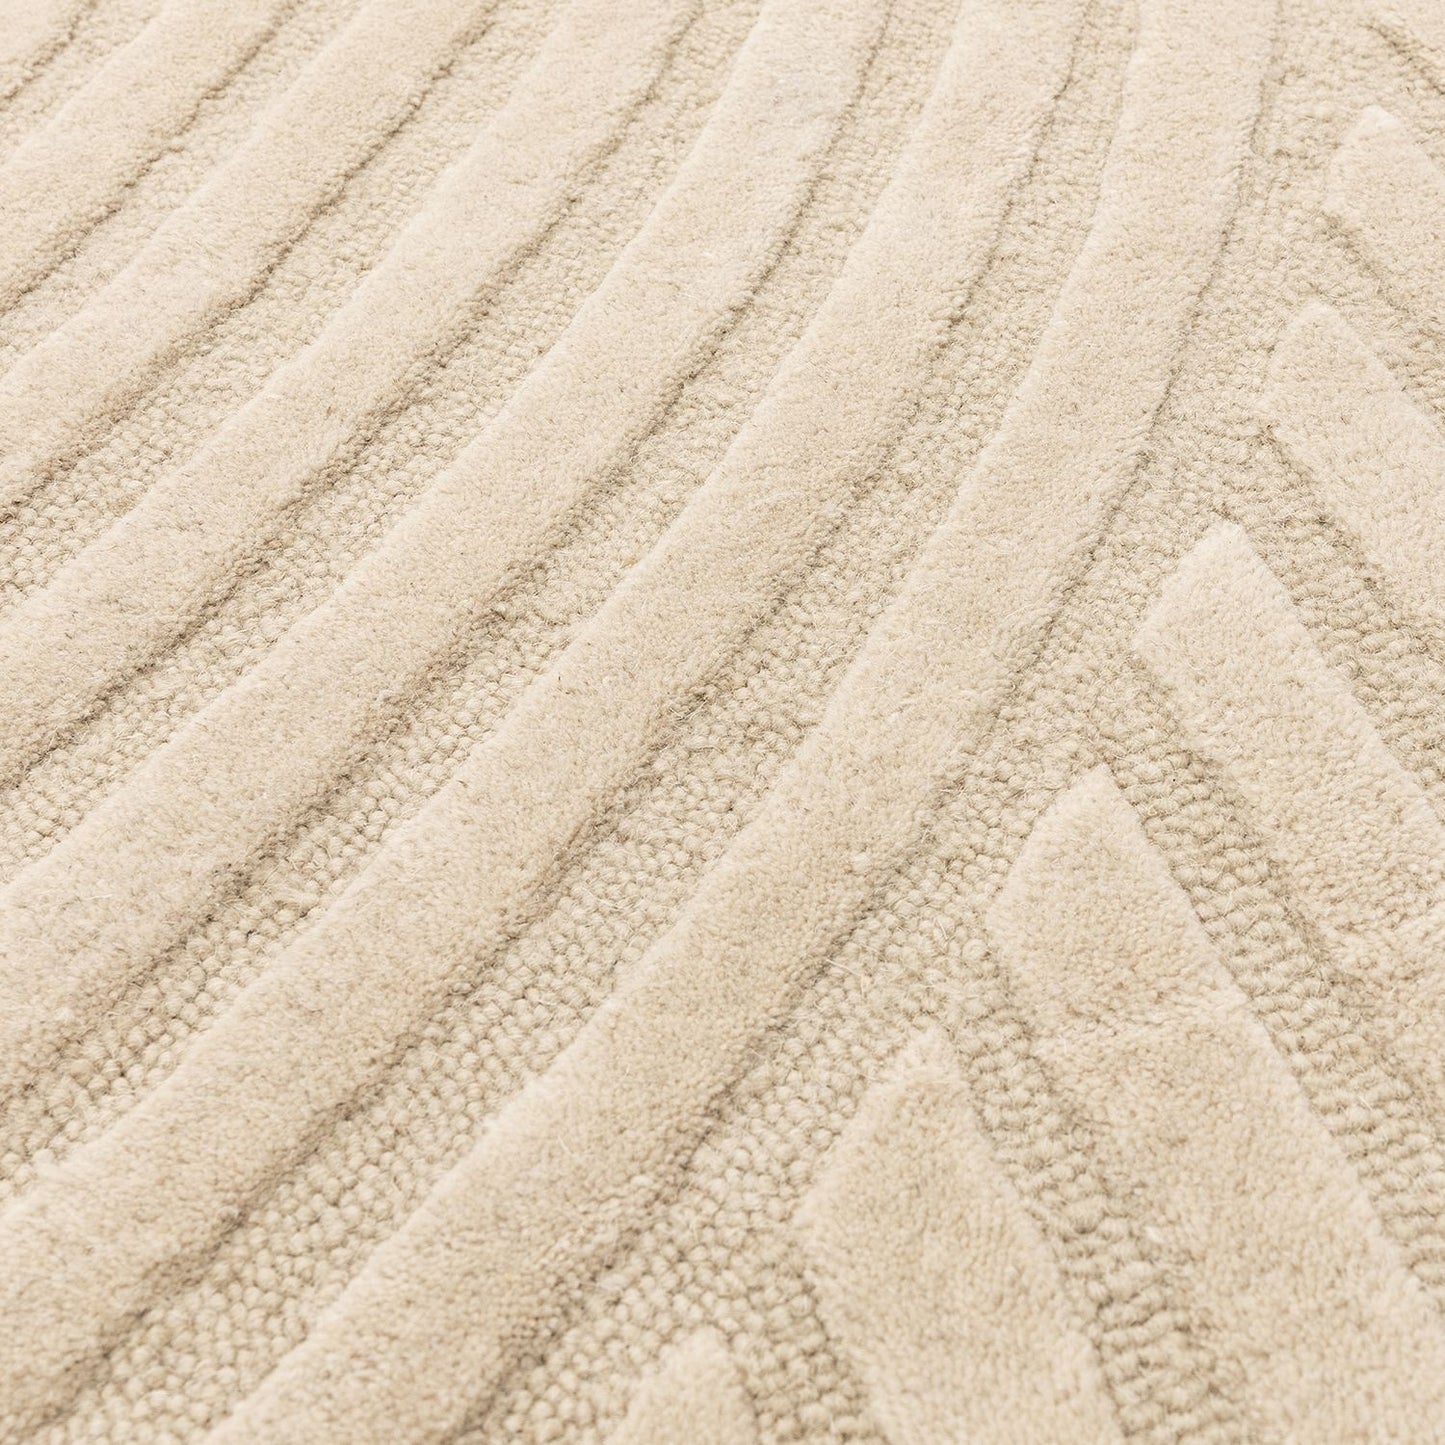 Hague Floor Rug - Sand